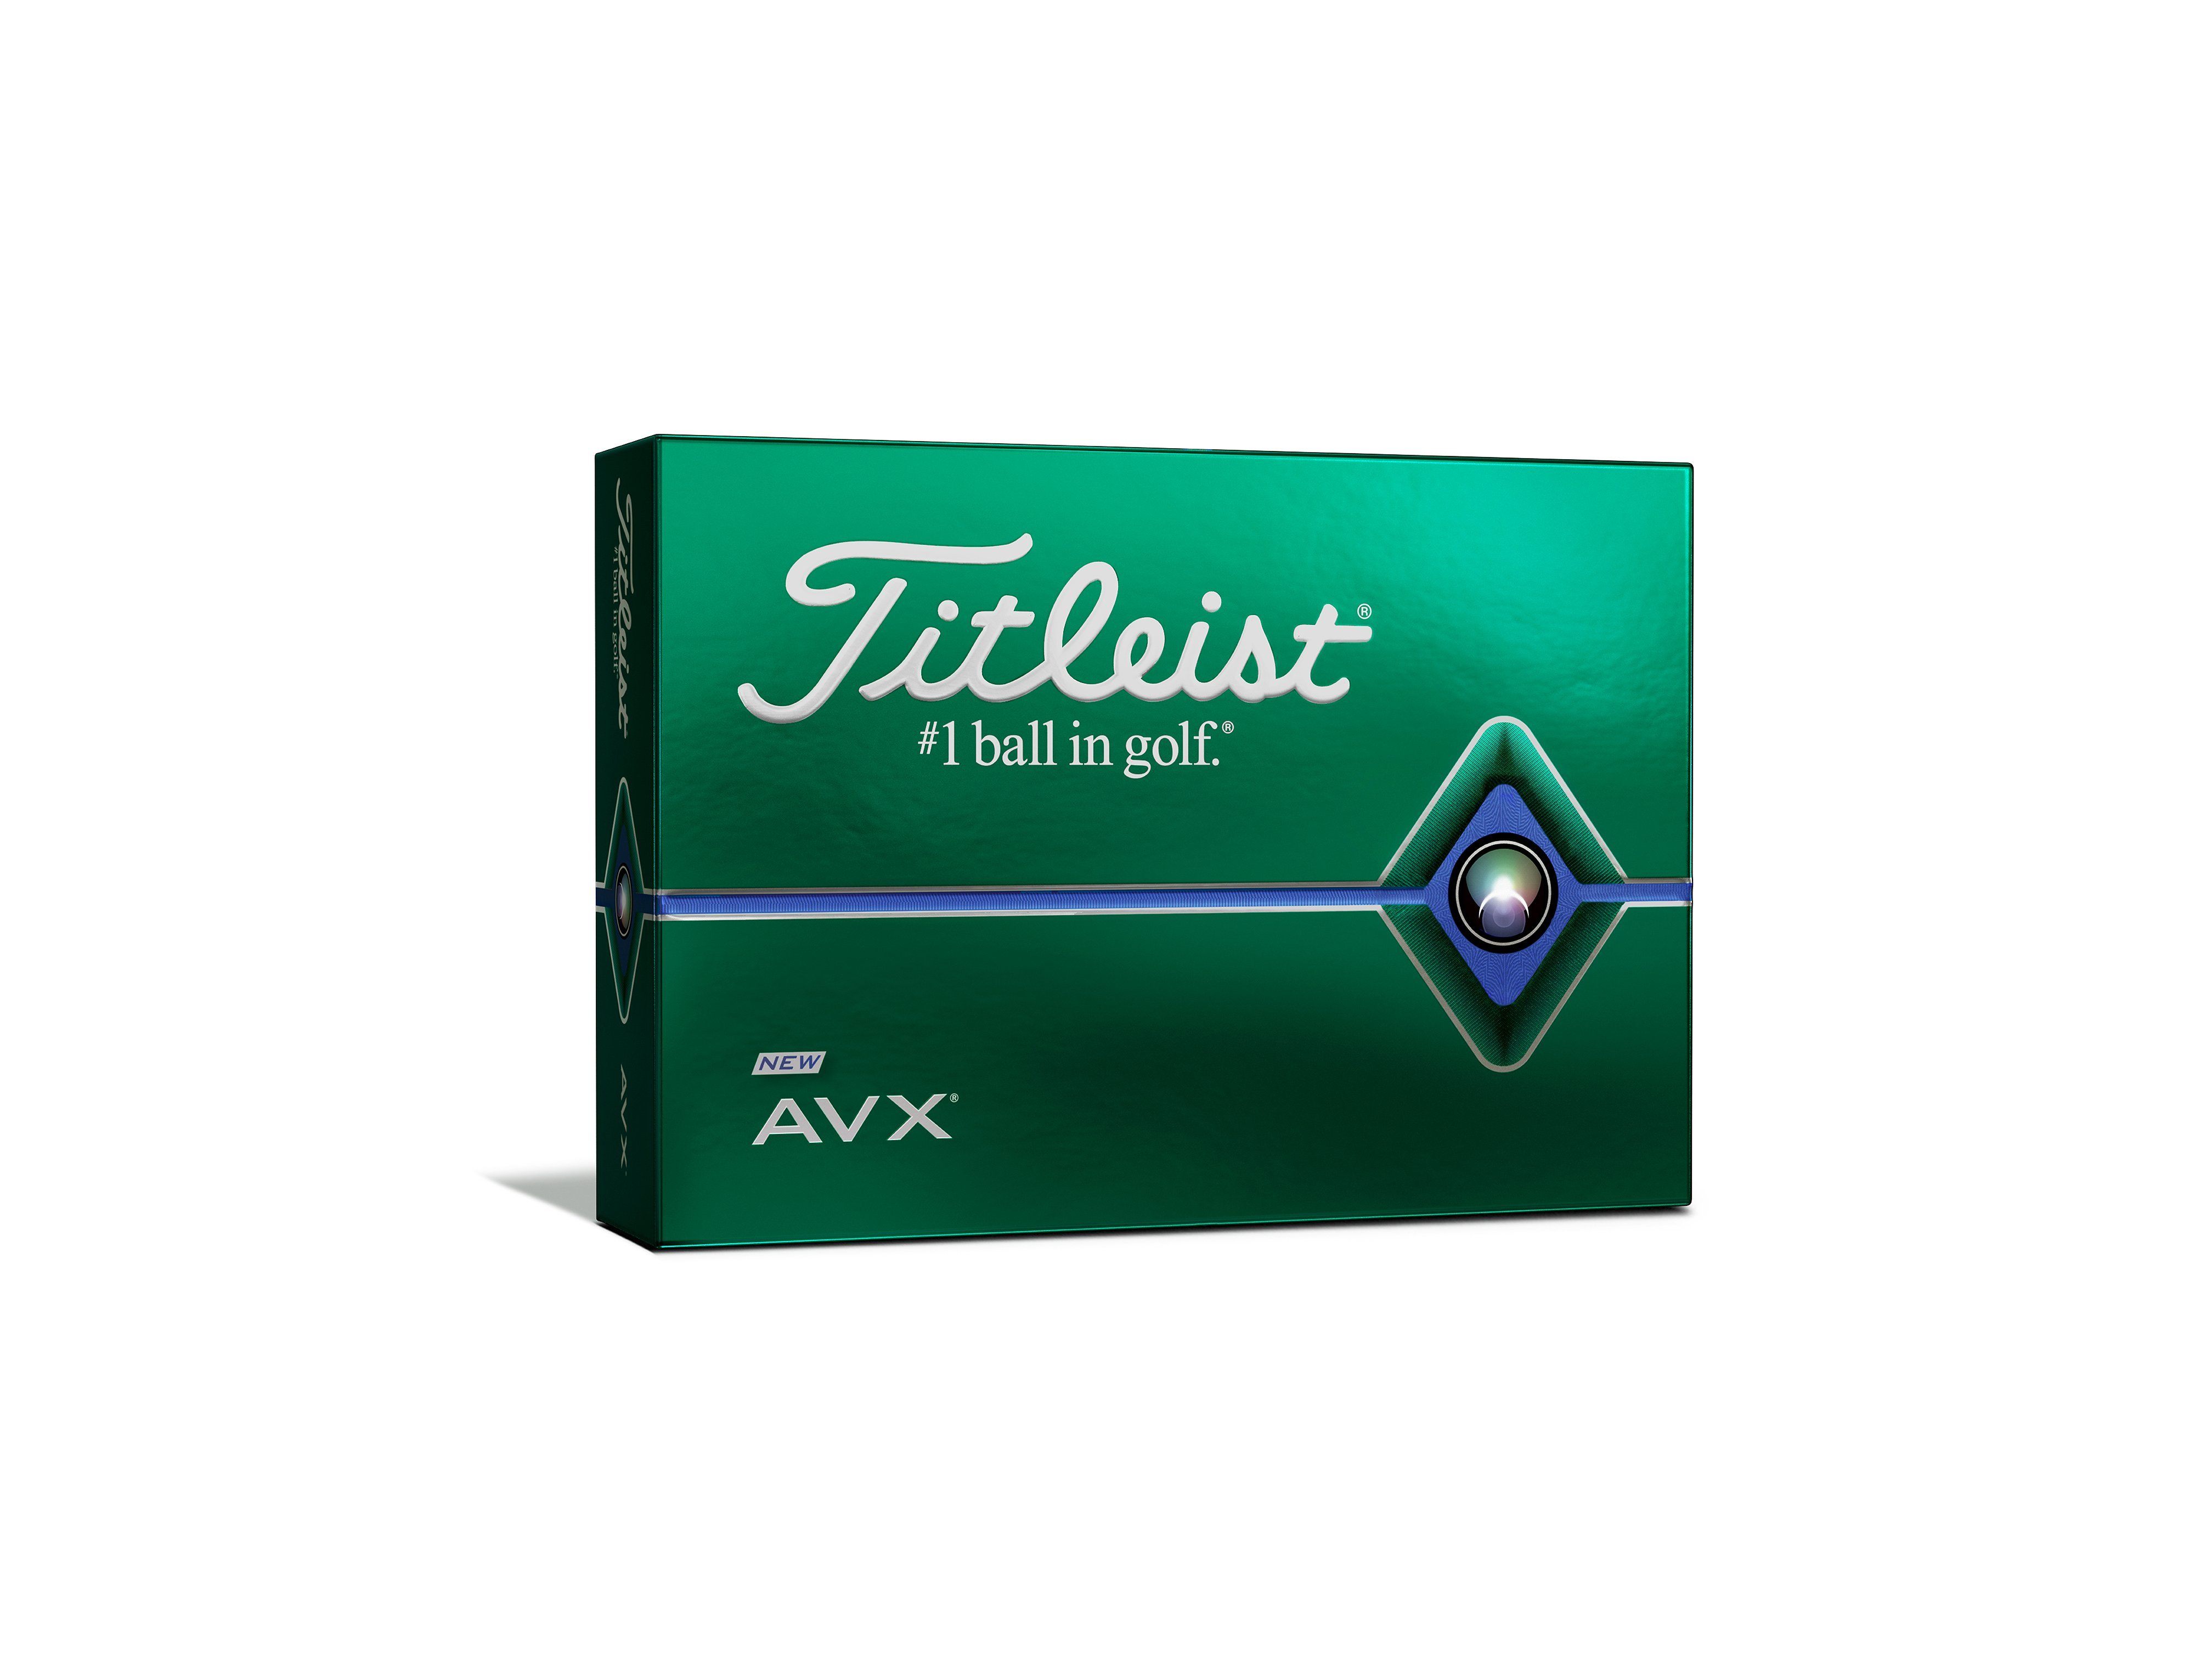 Balle Titleist AVX personnalisée balle de golf Titleist 